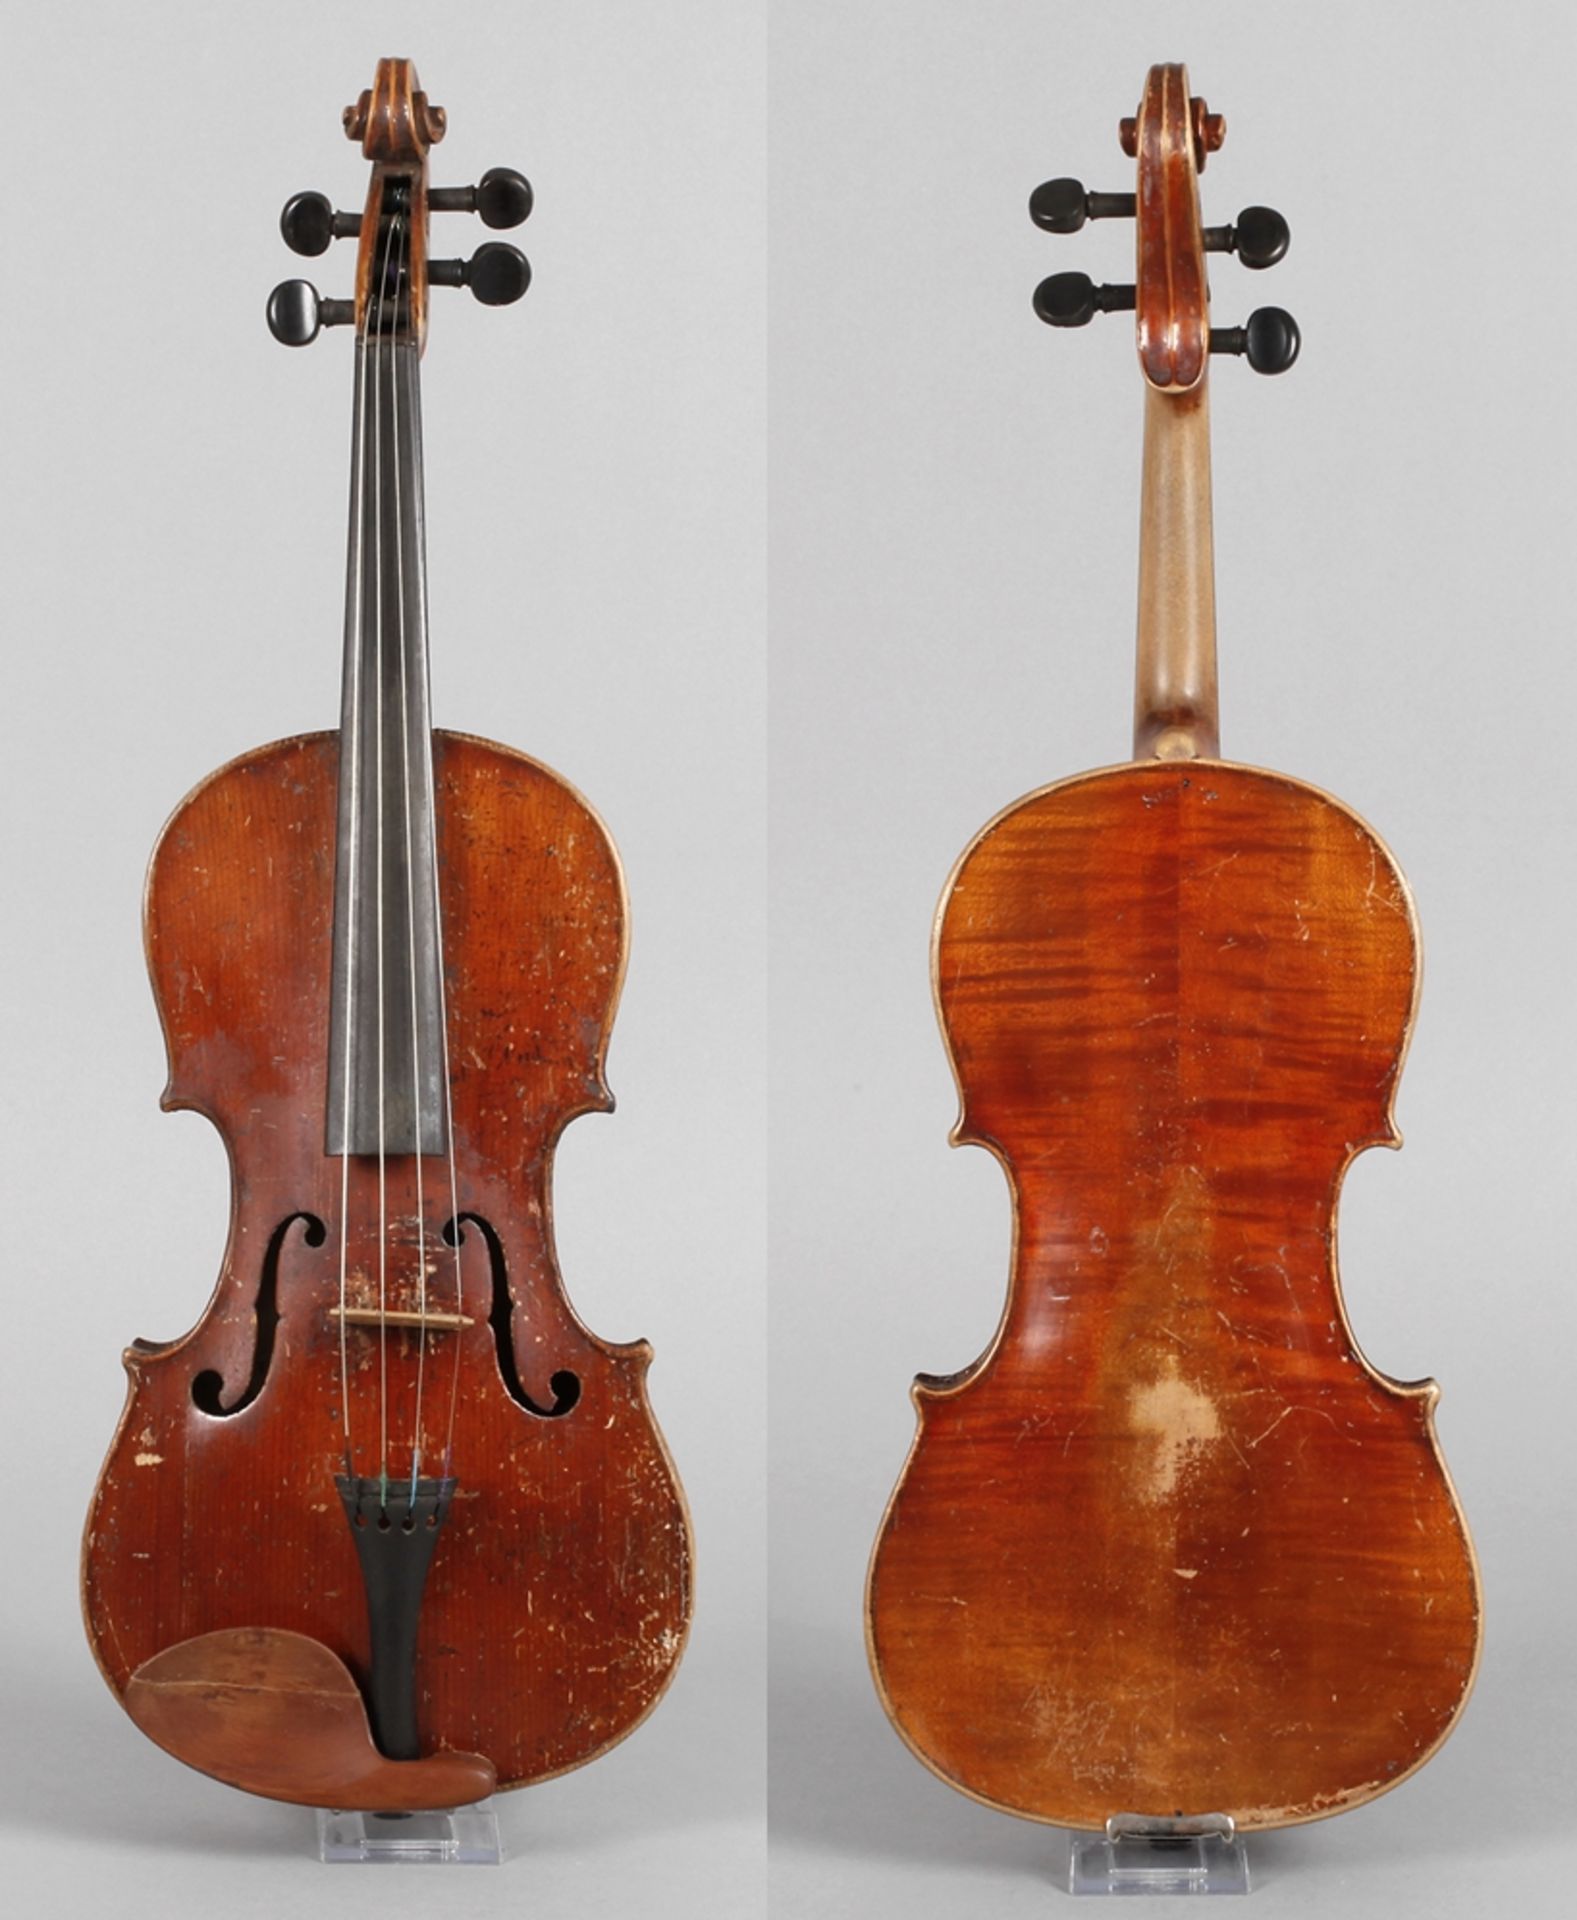 ViolineBöhmen, innen auf Klebezettel undeutlich bezeichnet Jiri Stocek? und datiert 1923, sowie